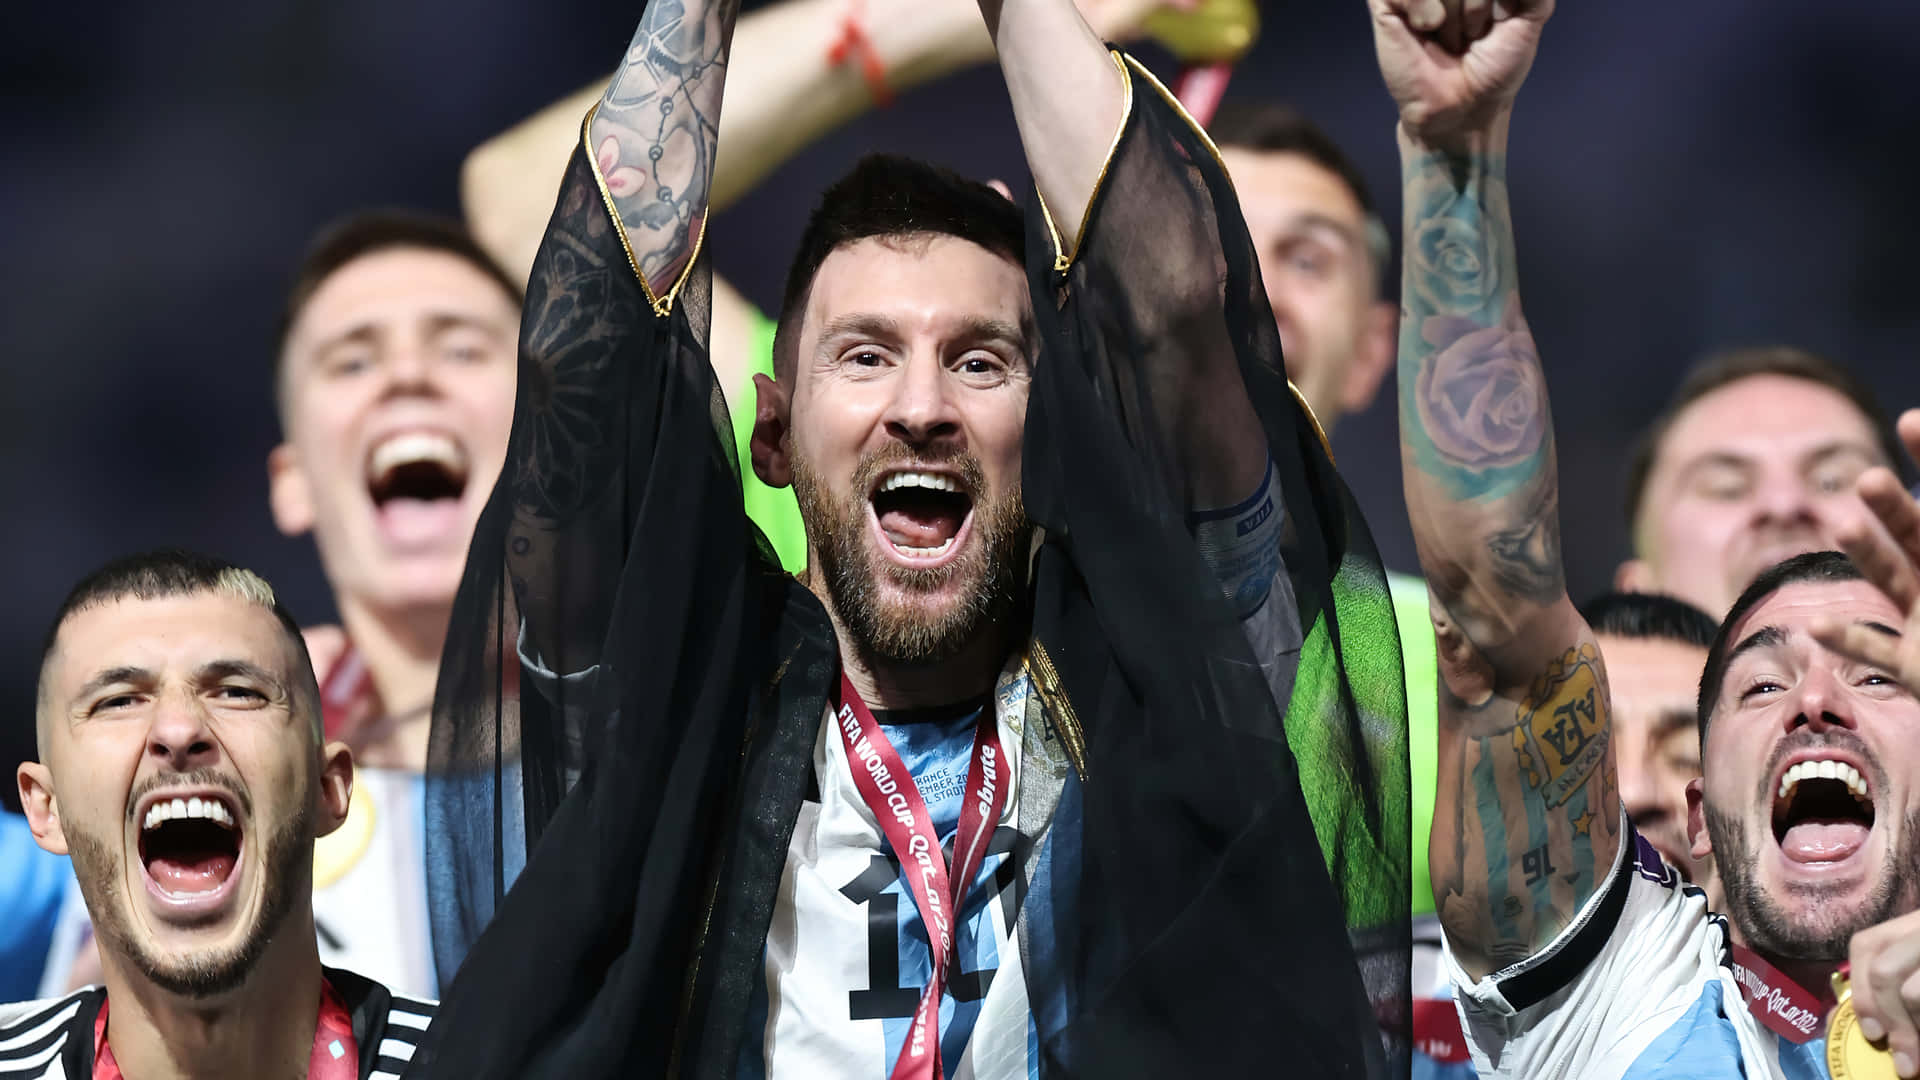 Unmomento Sorprendente Per La Superstar Del Calcio Lionel Messi Mentre Festeggia La Sua Vittoria Durante Una Partita Di Calcio.